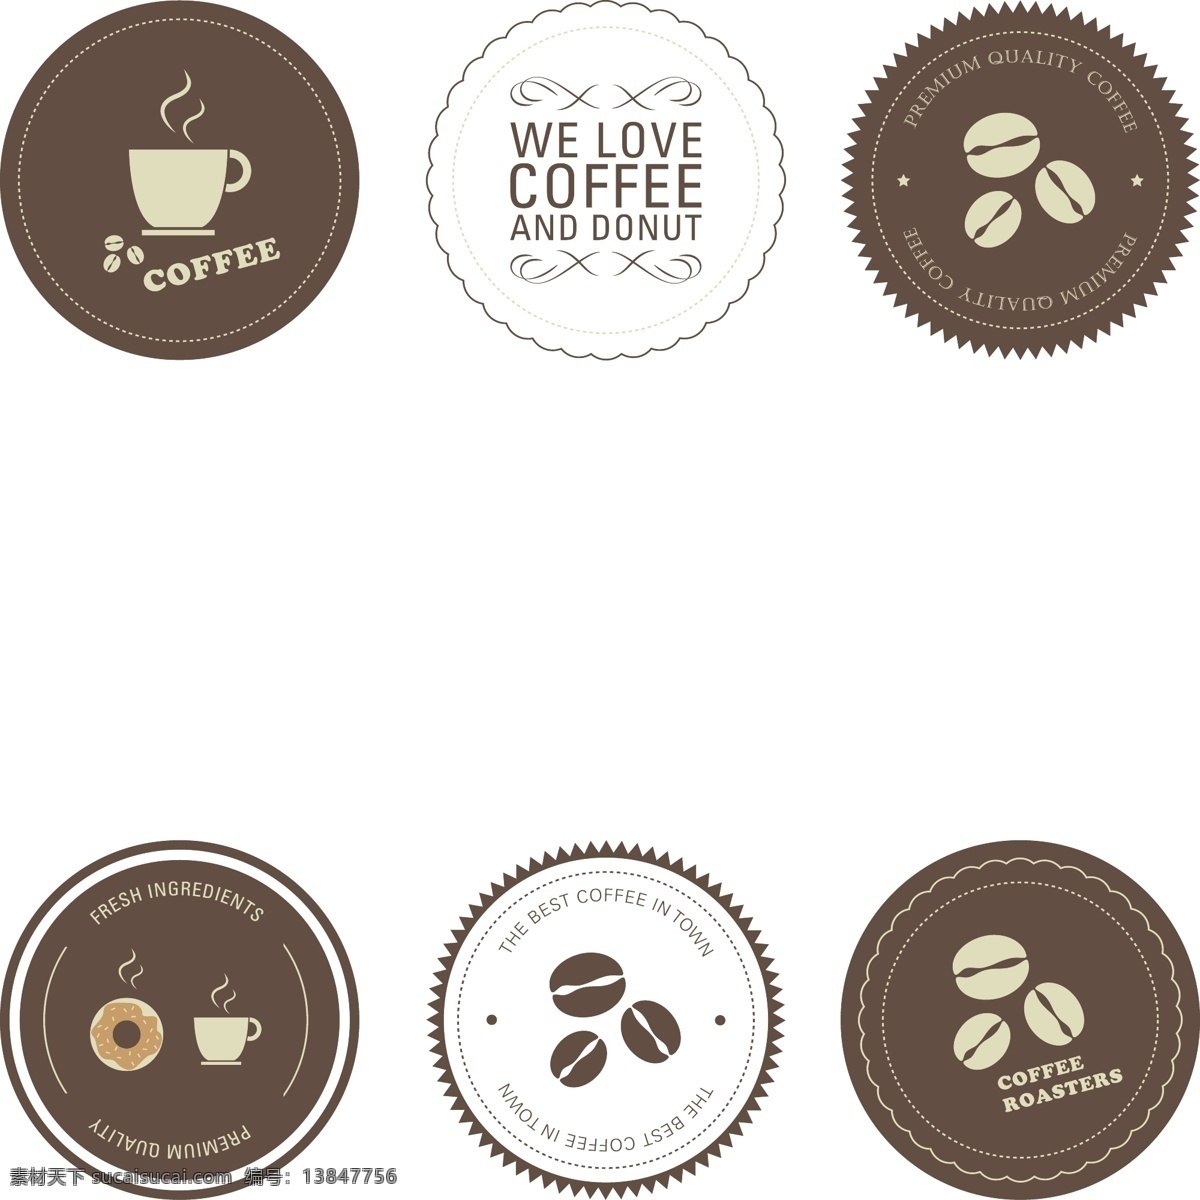 创意 圆形 咖啡 标志 英文 欧美风 标志设计 咖啡logo 矢量 ai素材 餐饮美食